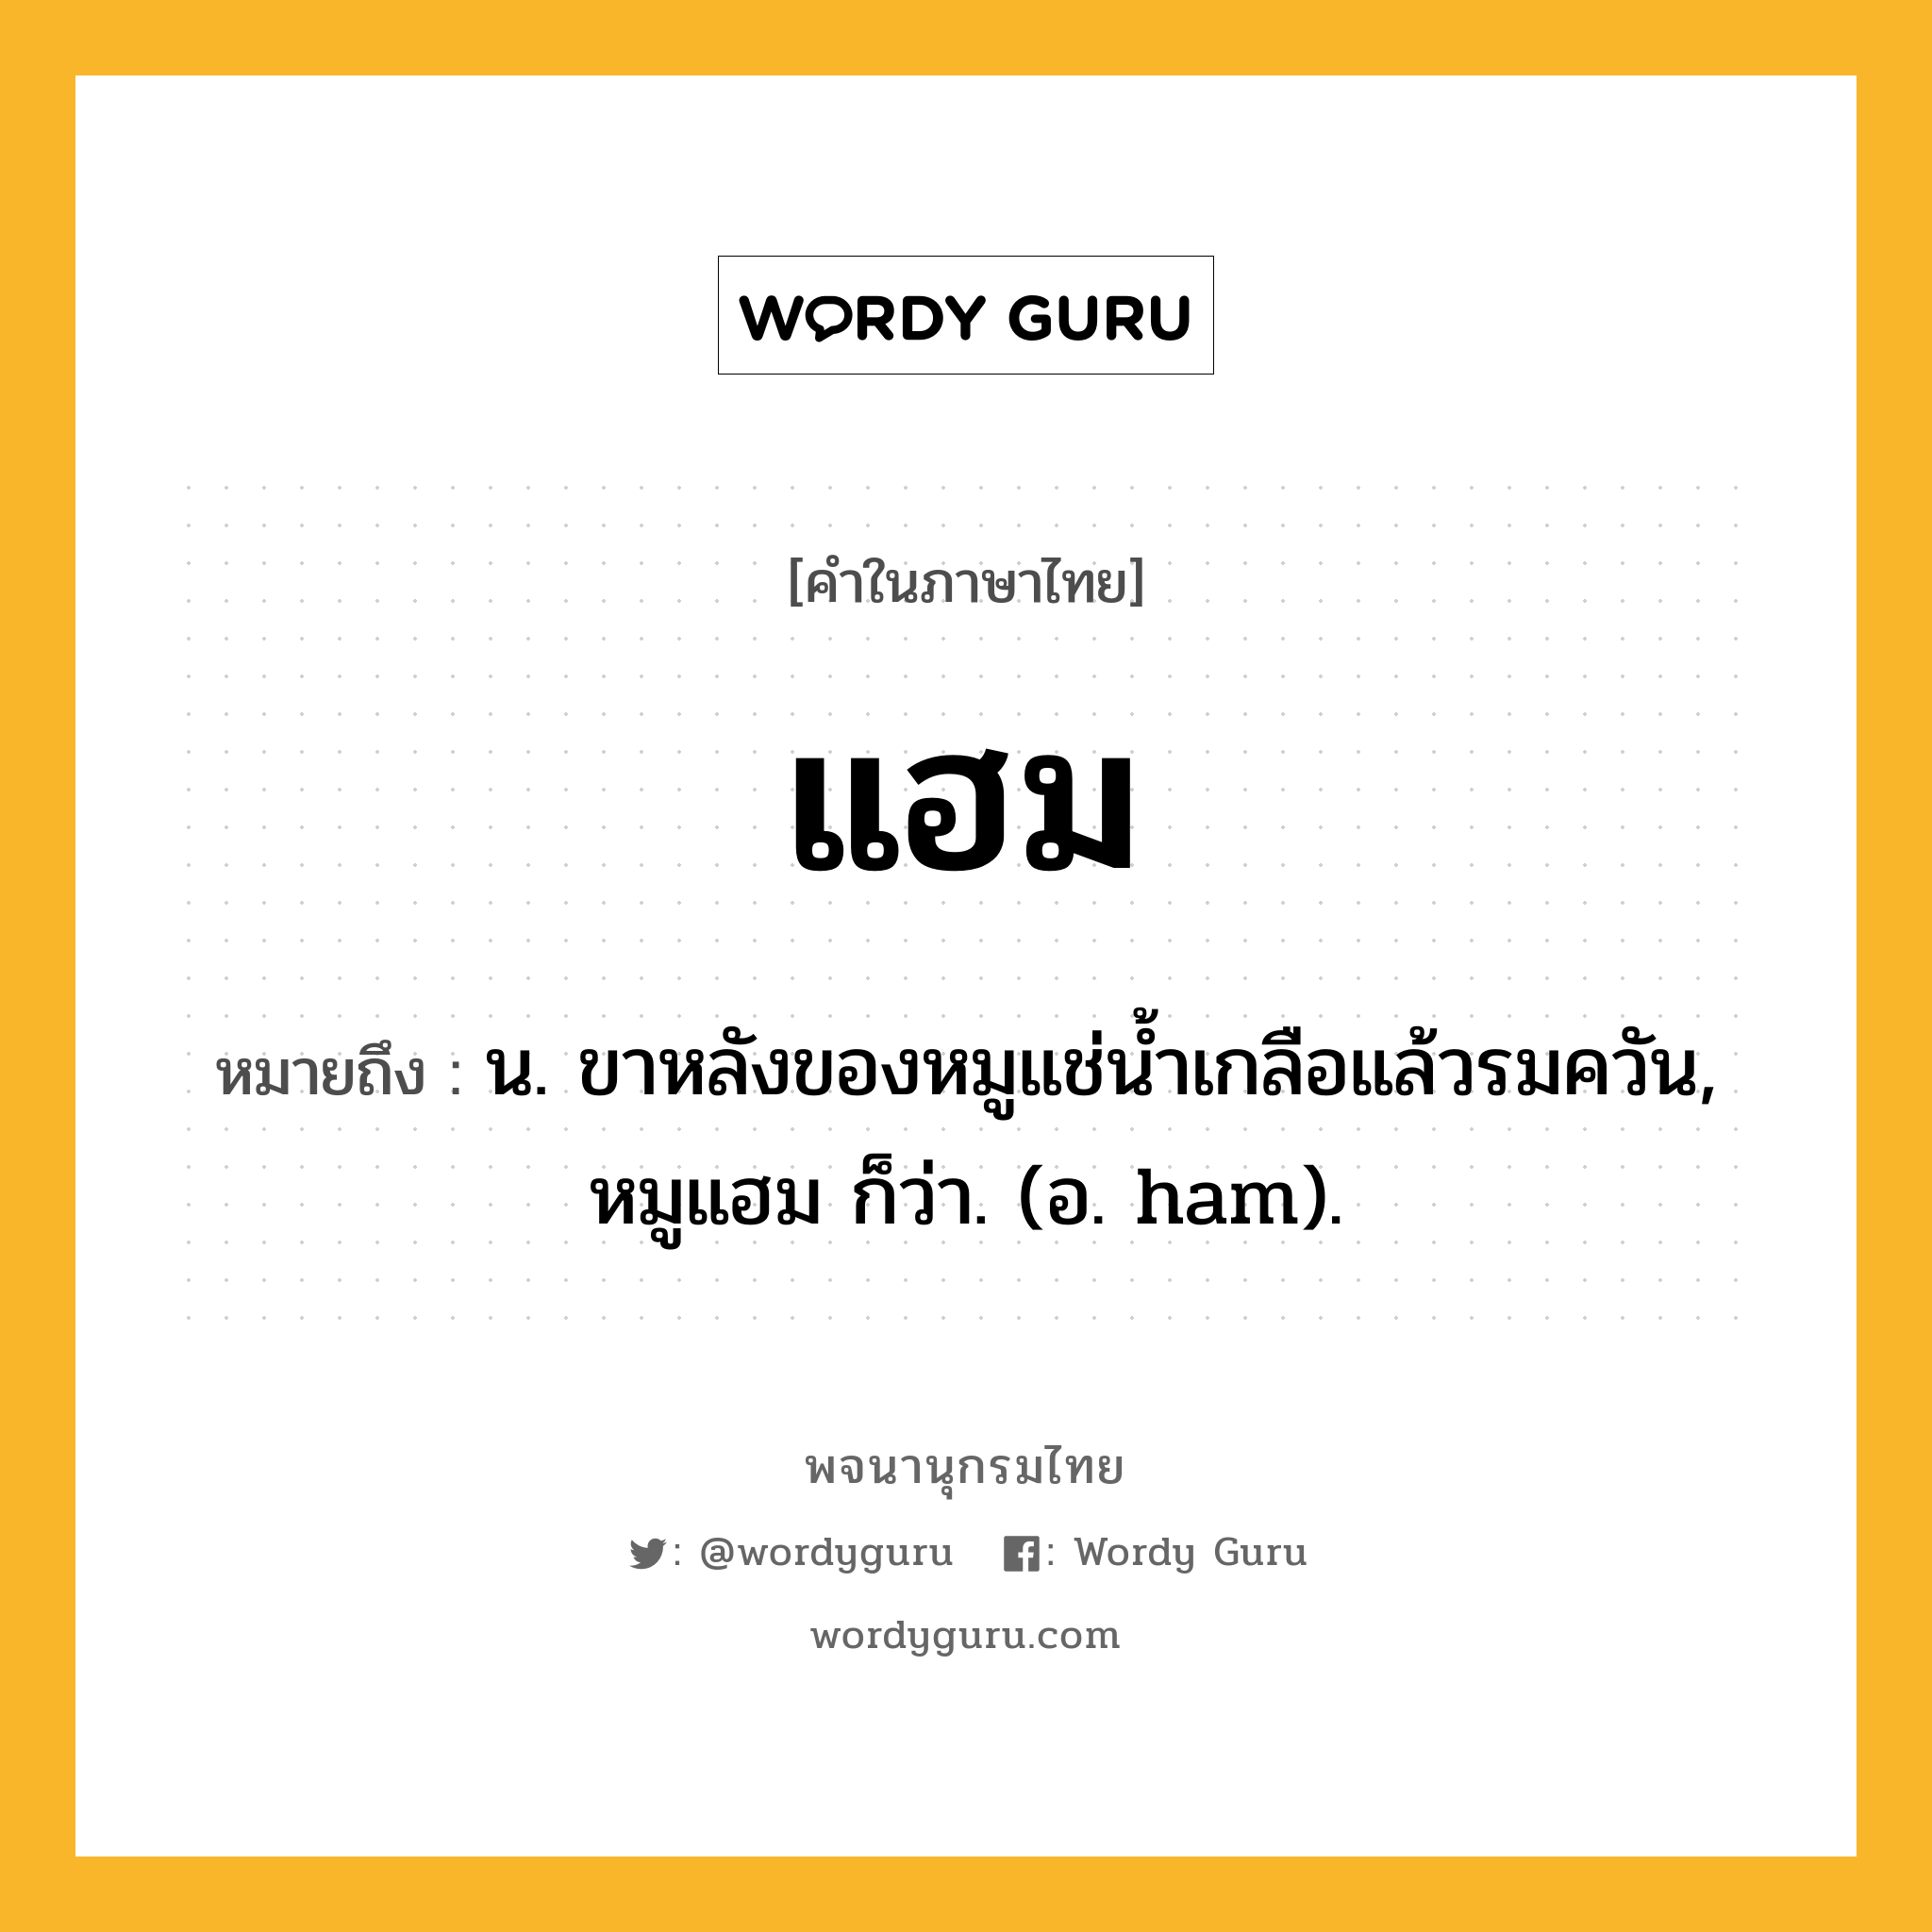 แฮม หมายถึงอะไร?, คำในภาษาไทย แฮม หมายถึง น. ขาหลังของหมูแช่น้ำเกลือแล้วรมควัน, หมูแฮม ก็ว่า. (อ. ham).